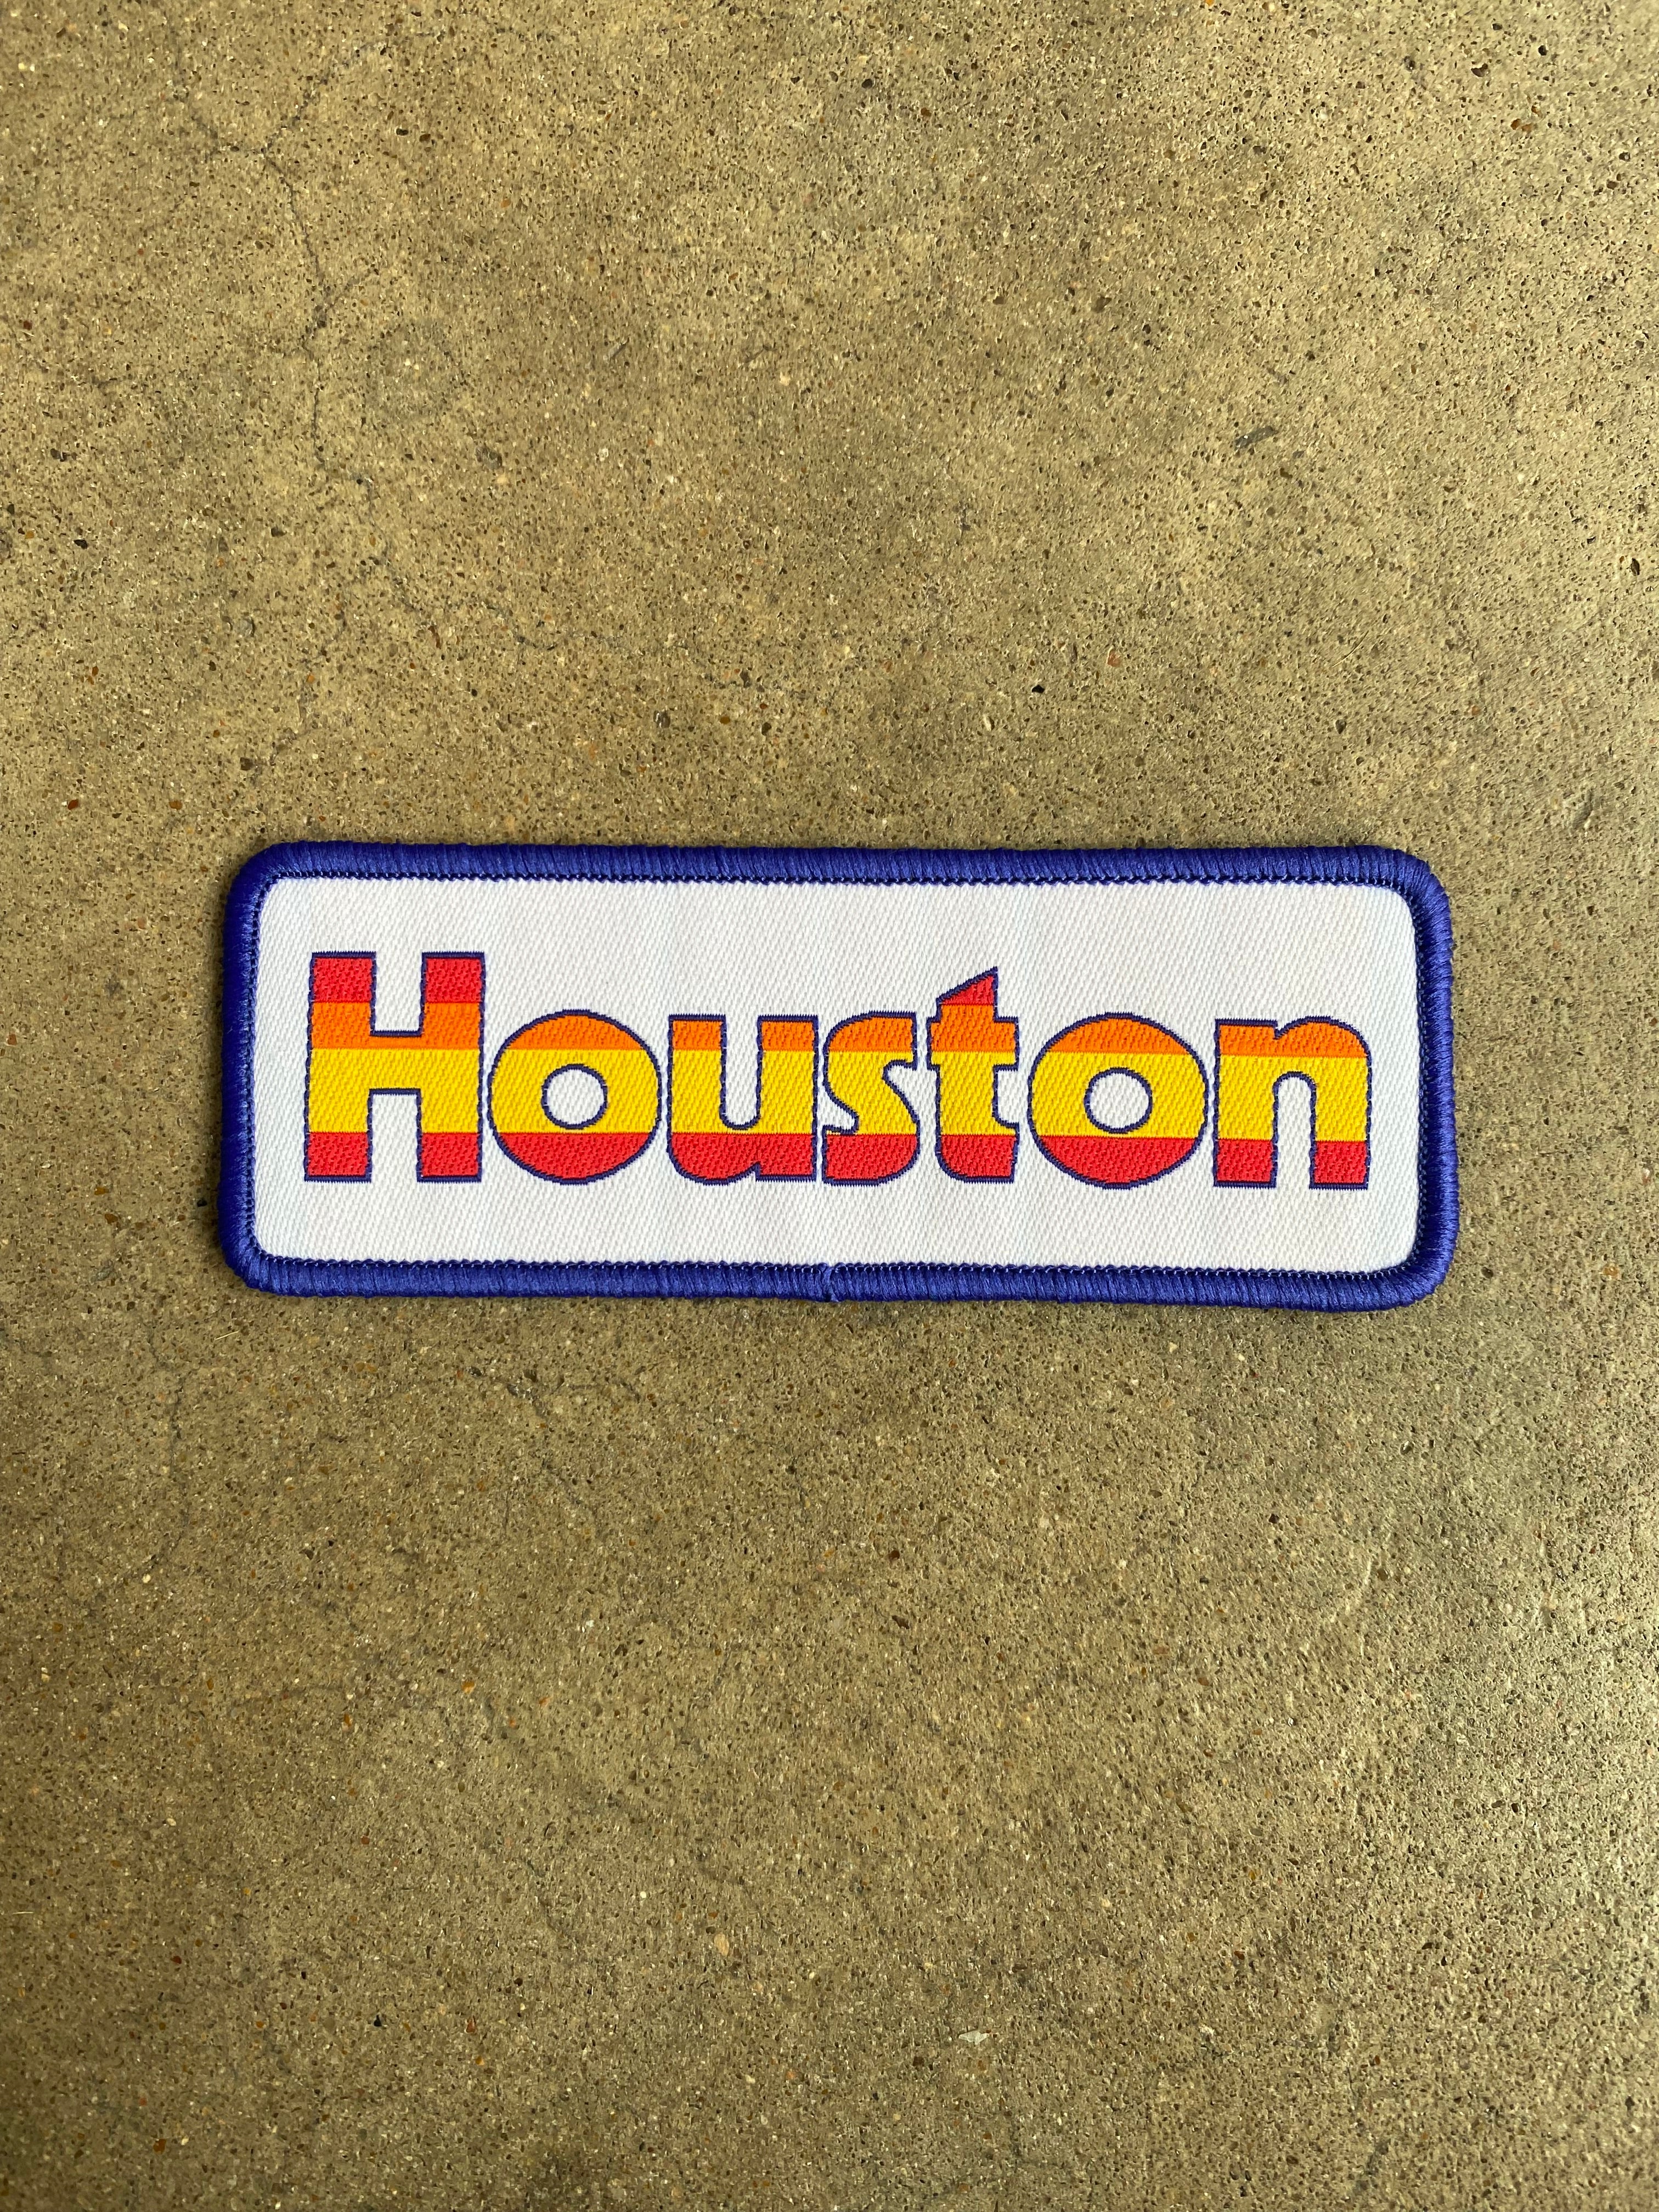 Houston Astros iron on patch